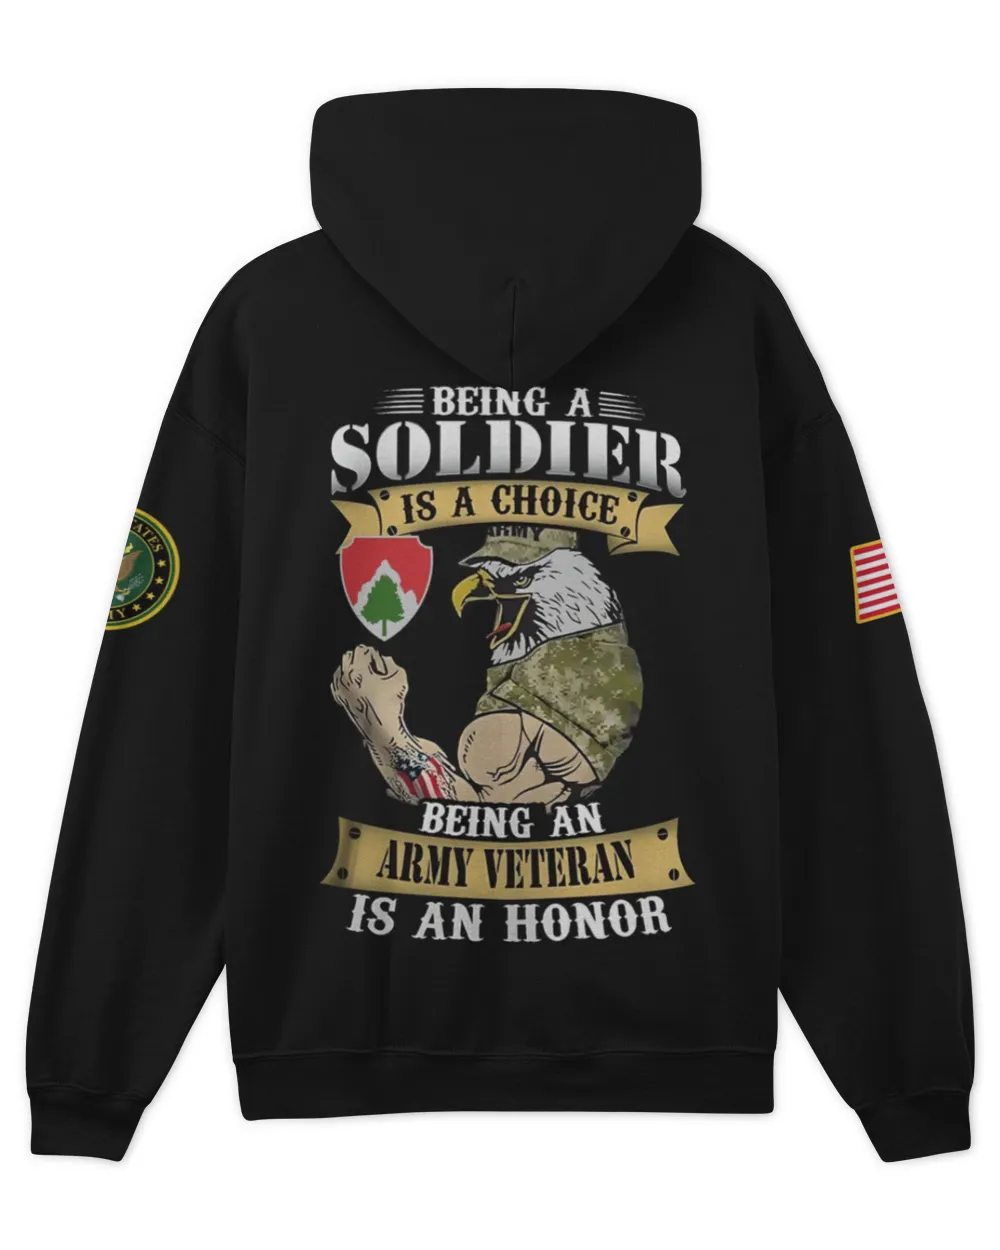 23rd Engineer Battalion Bravo Company  Tshirt